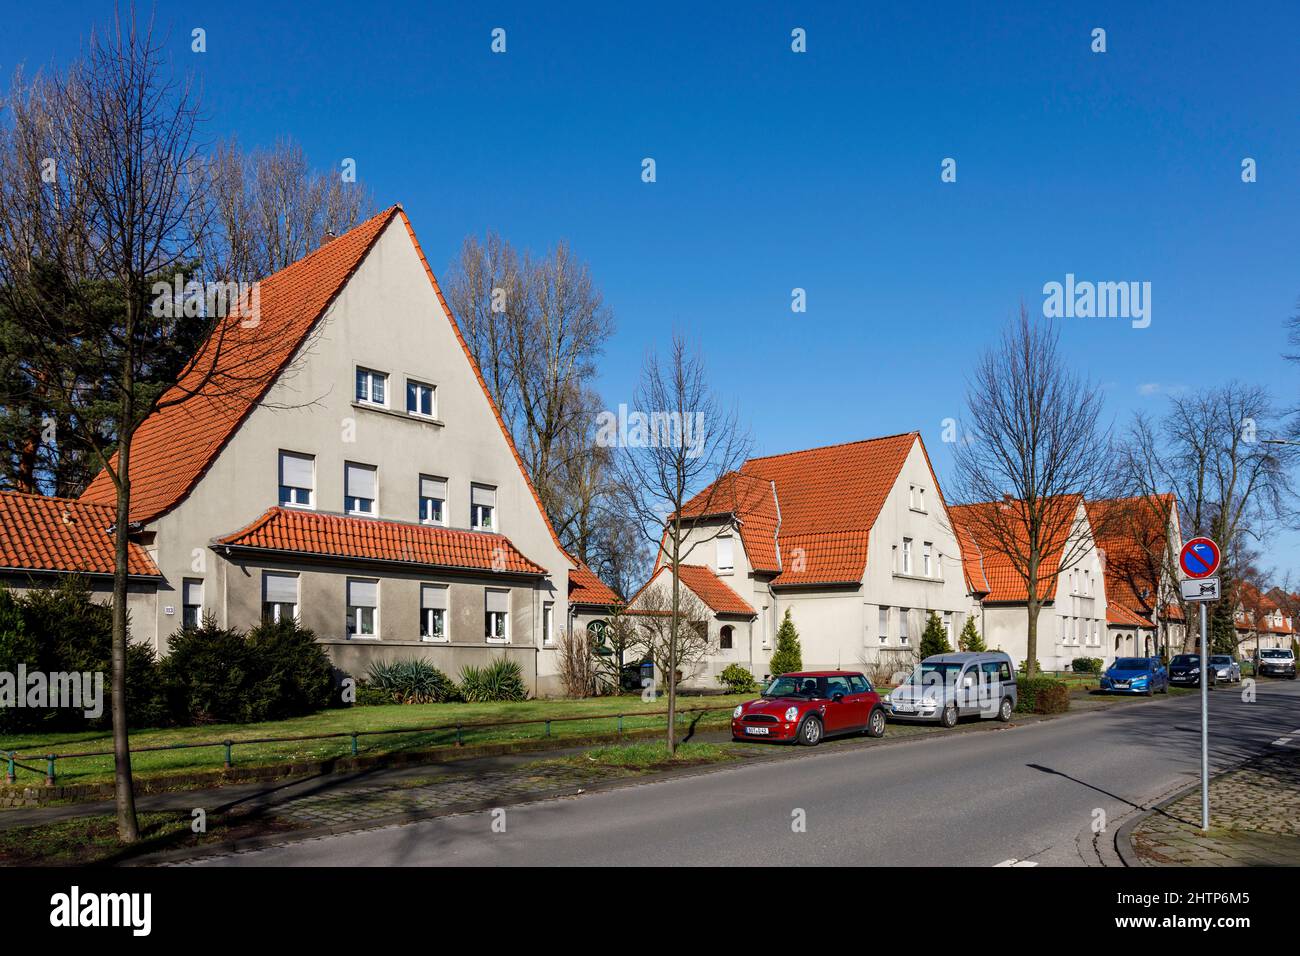 Gartenstadt Welheim settlement in Bottrop, the workers' settlement is part of the Industrial Heritage Route Stock Photo